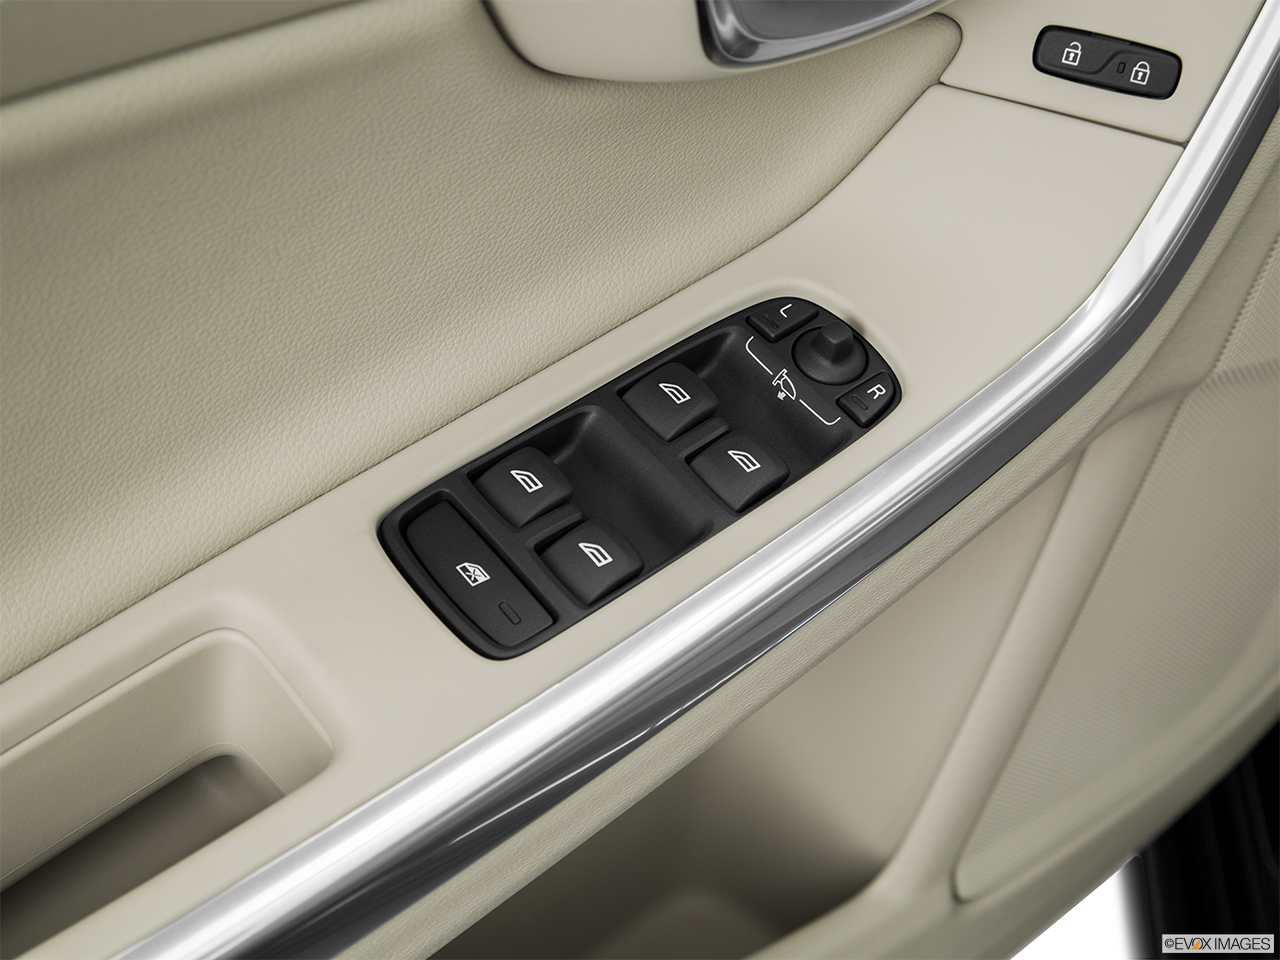 2016 Volvo S60 T5 Drive-E FWD Premier Driver's side inside window controls. 